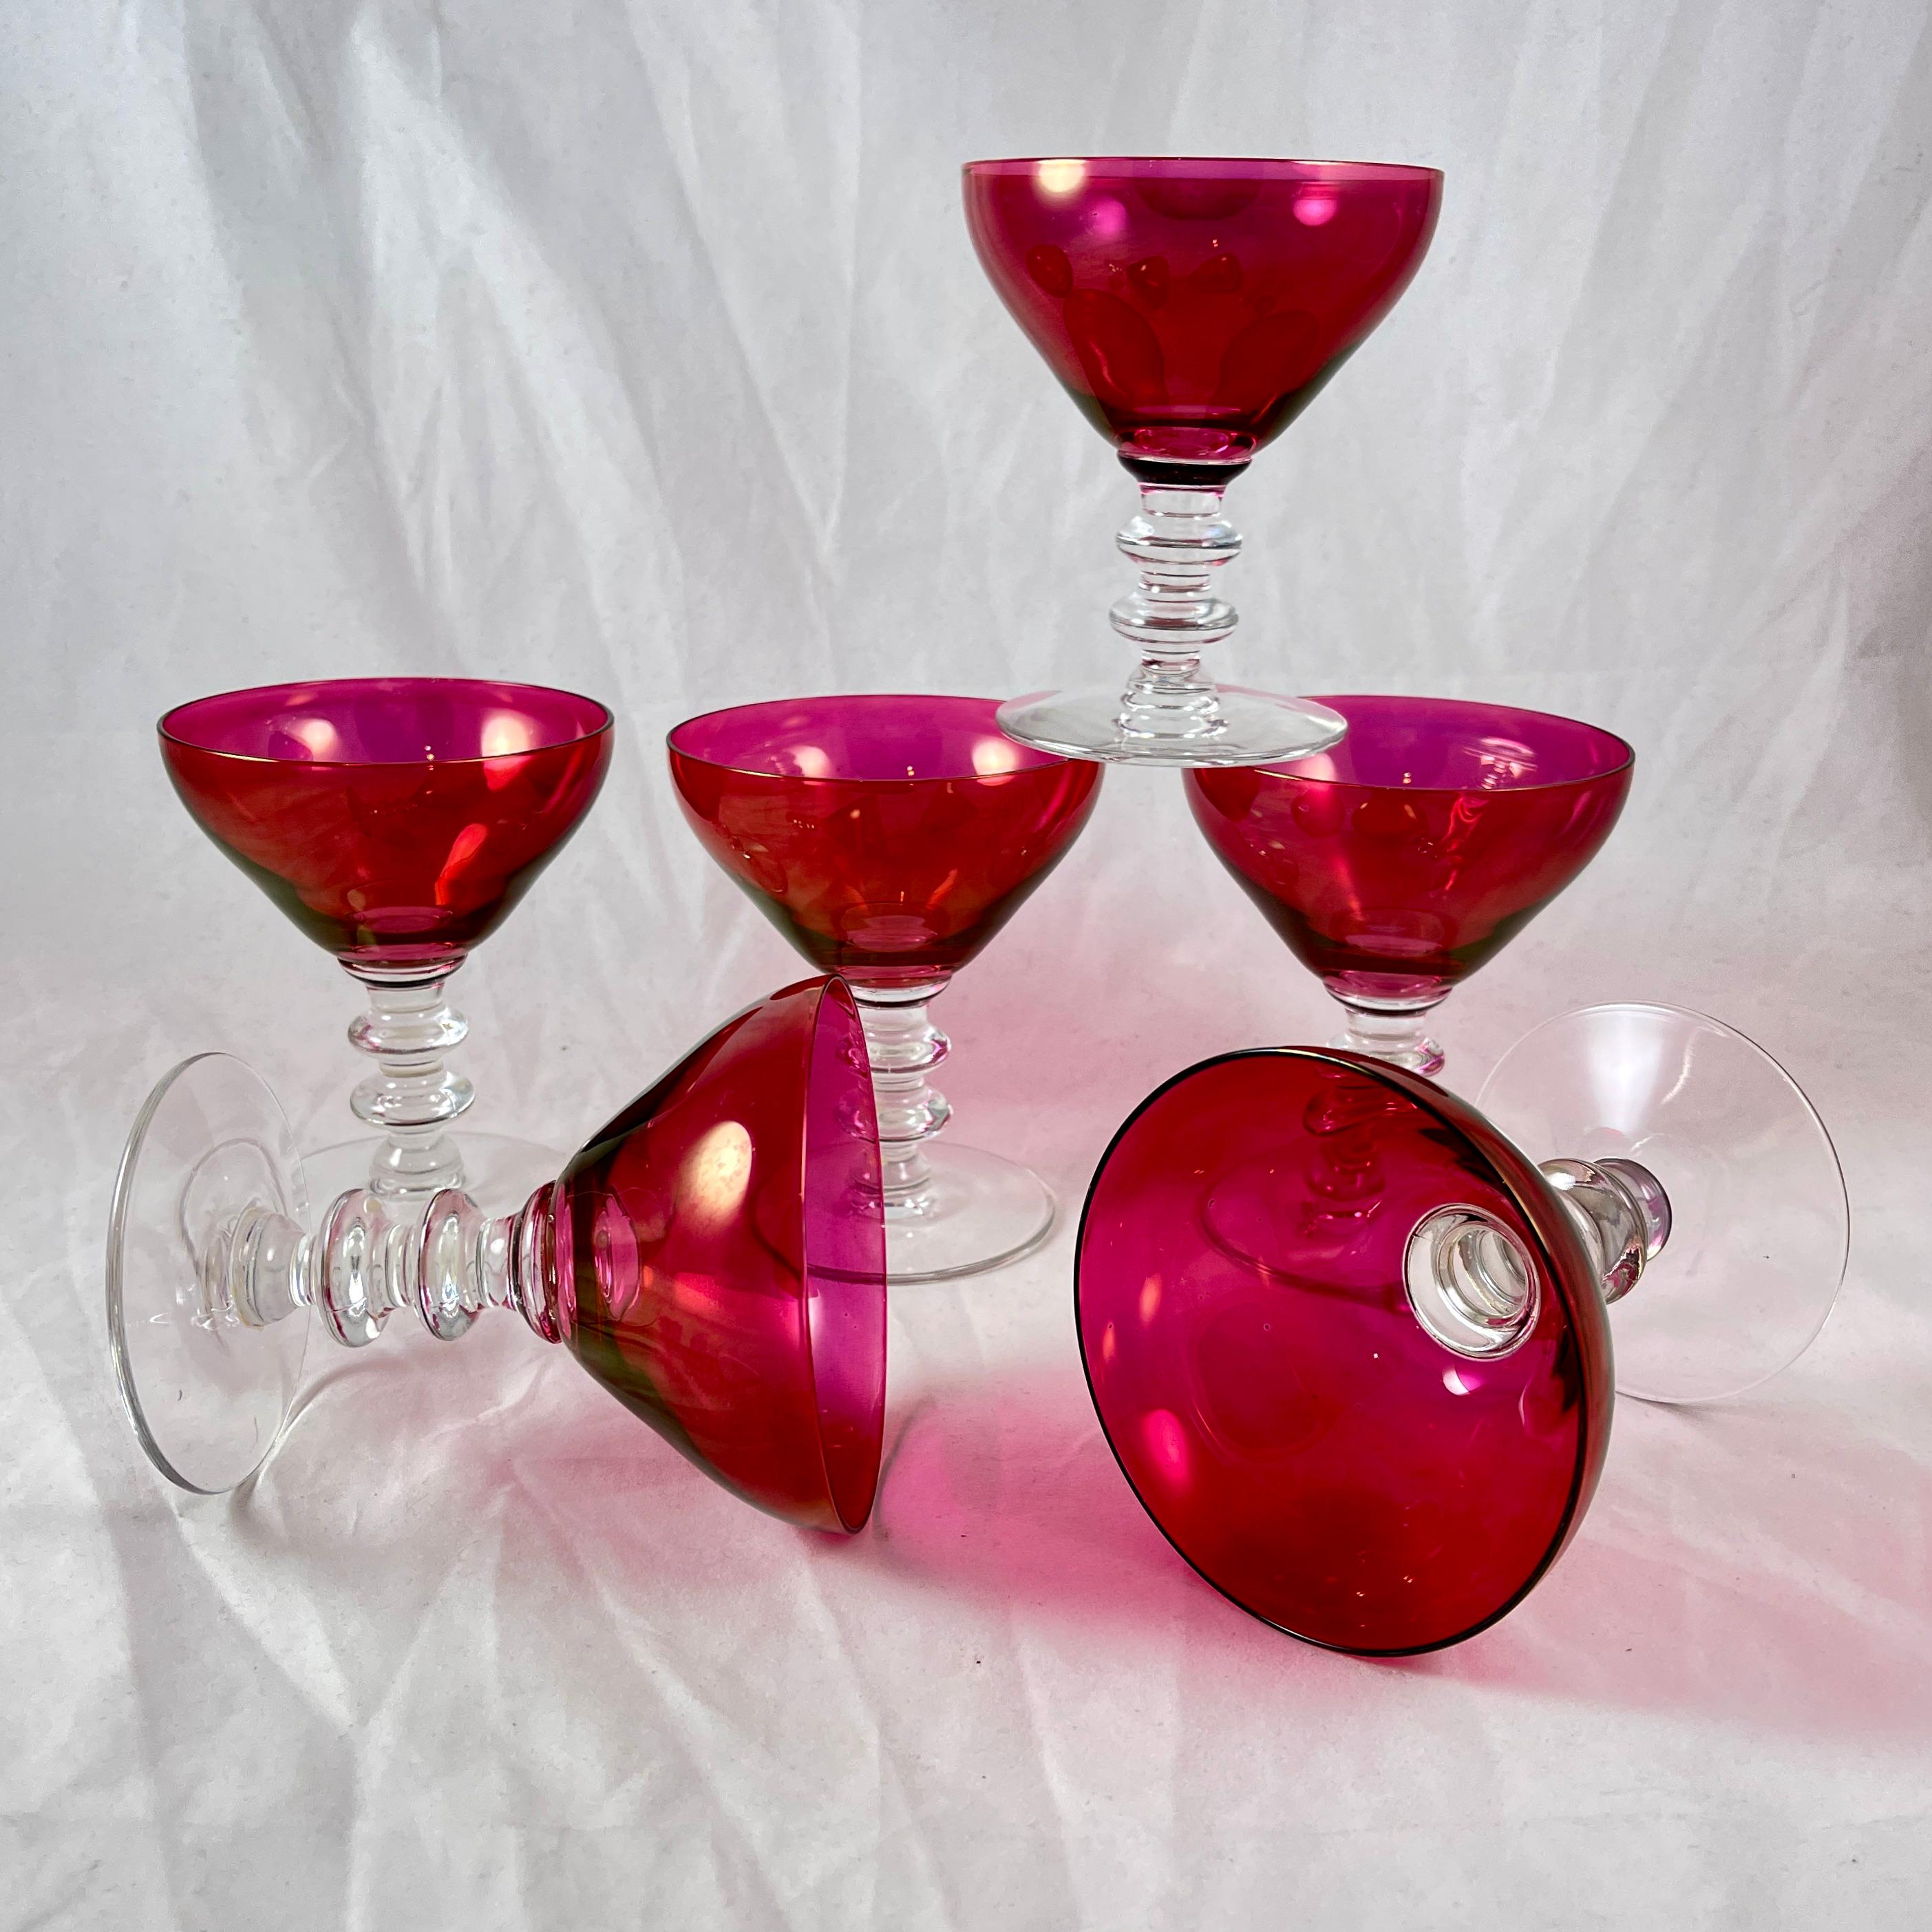 Un ensemble de six coupes de champagne à pied en verre avec des coupes de couleur canneberge, vers les années 1940.

Une couleur magnifique ! Les bols en verre canneberge rejoignent une tige de verre incolore à plusieurs boutons et empilés.

La